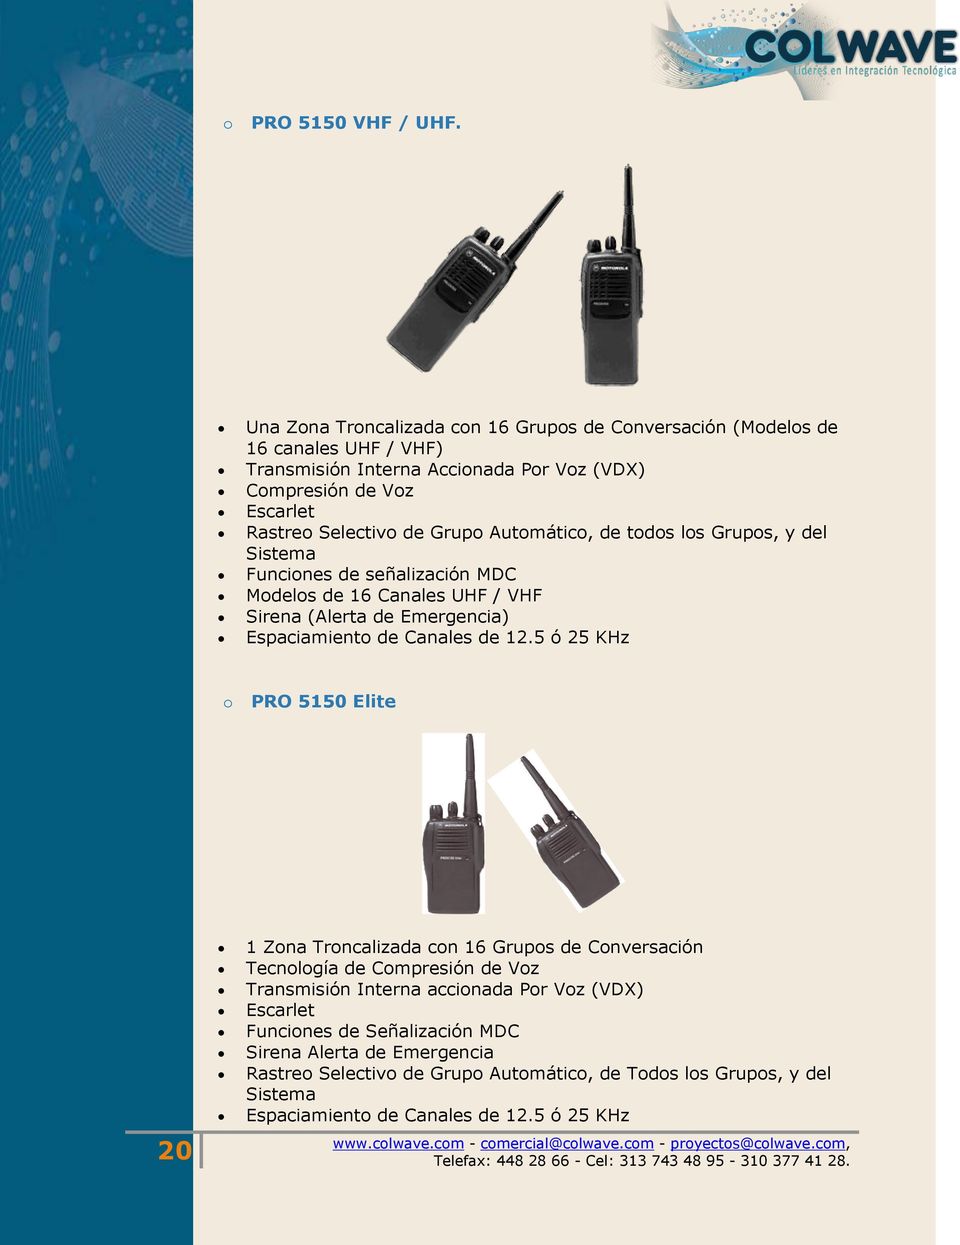 Grupo Automático, de todos los Grupos, y del Sistema Funciones de señalización MDC Modelos de 16 Canales UHF / VHF Sirena (Alerta de Emergencia) Espaciamiento de Canales de 12.